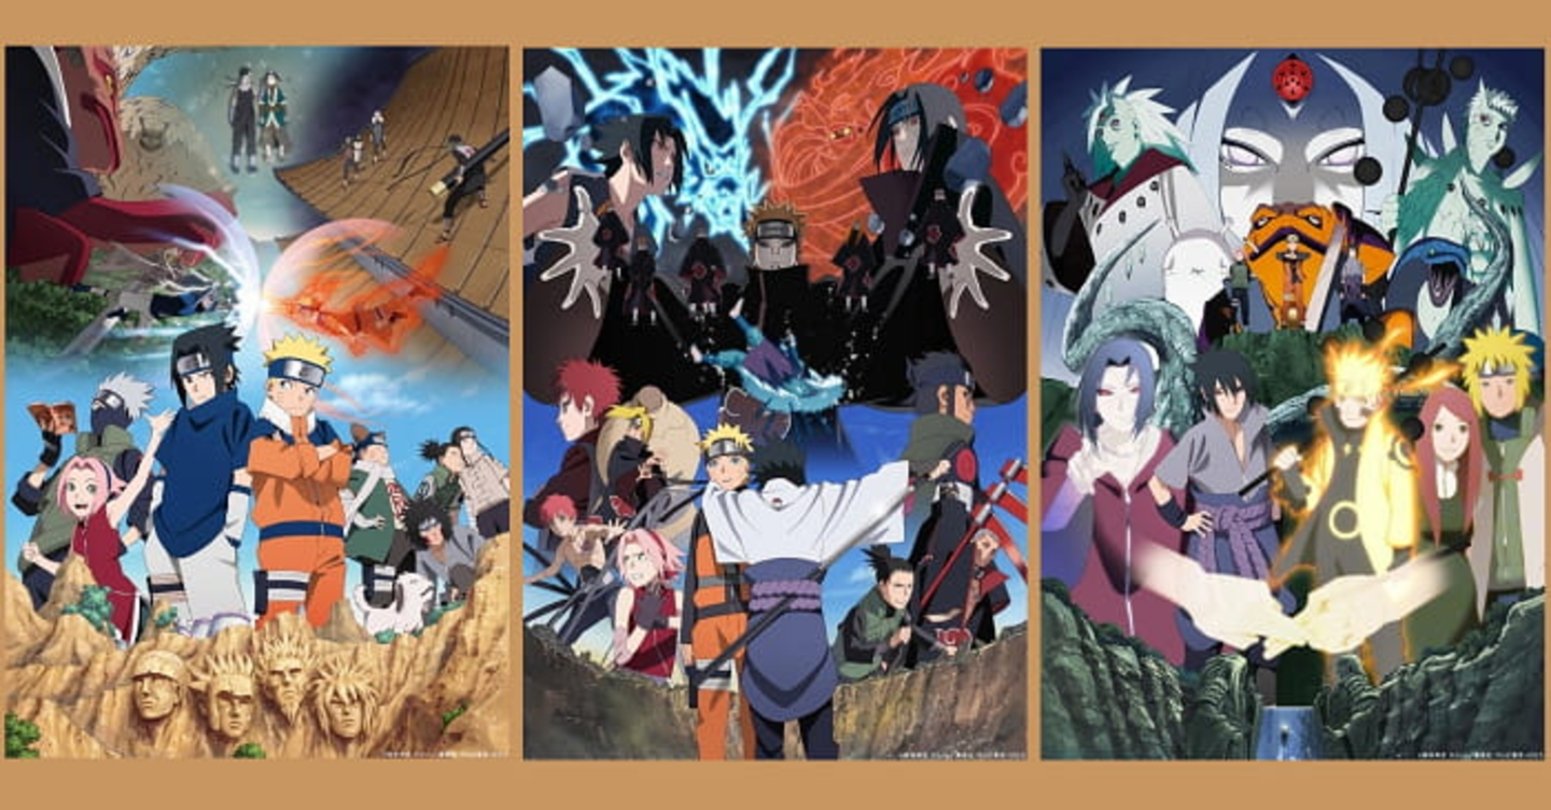 Las tres imágenes mostradas en octubre del año pasado, en conmemoración al 20 aniversario de Naruto